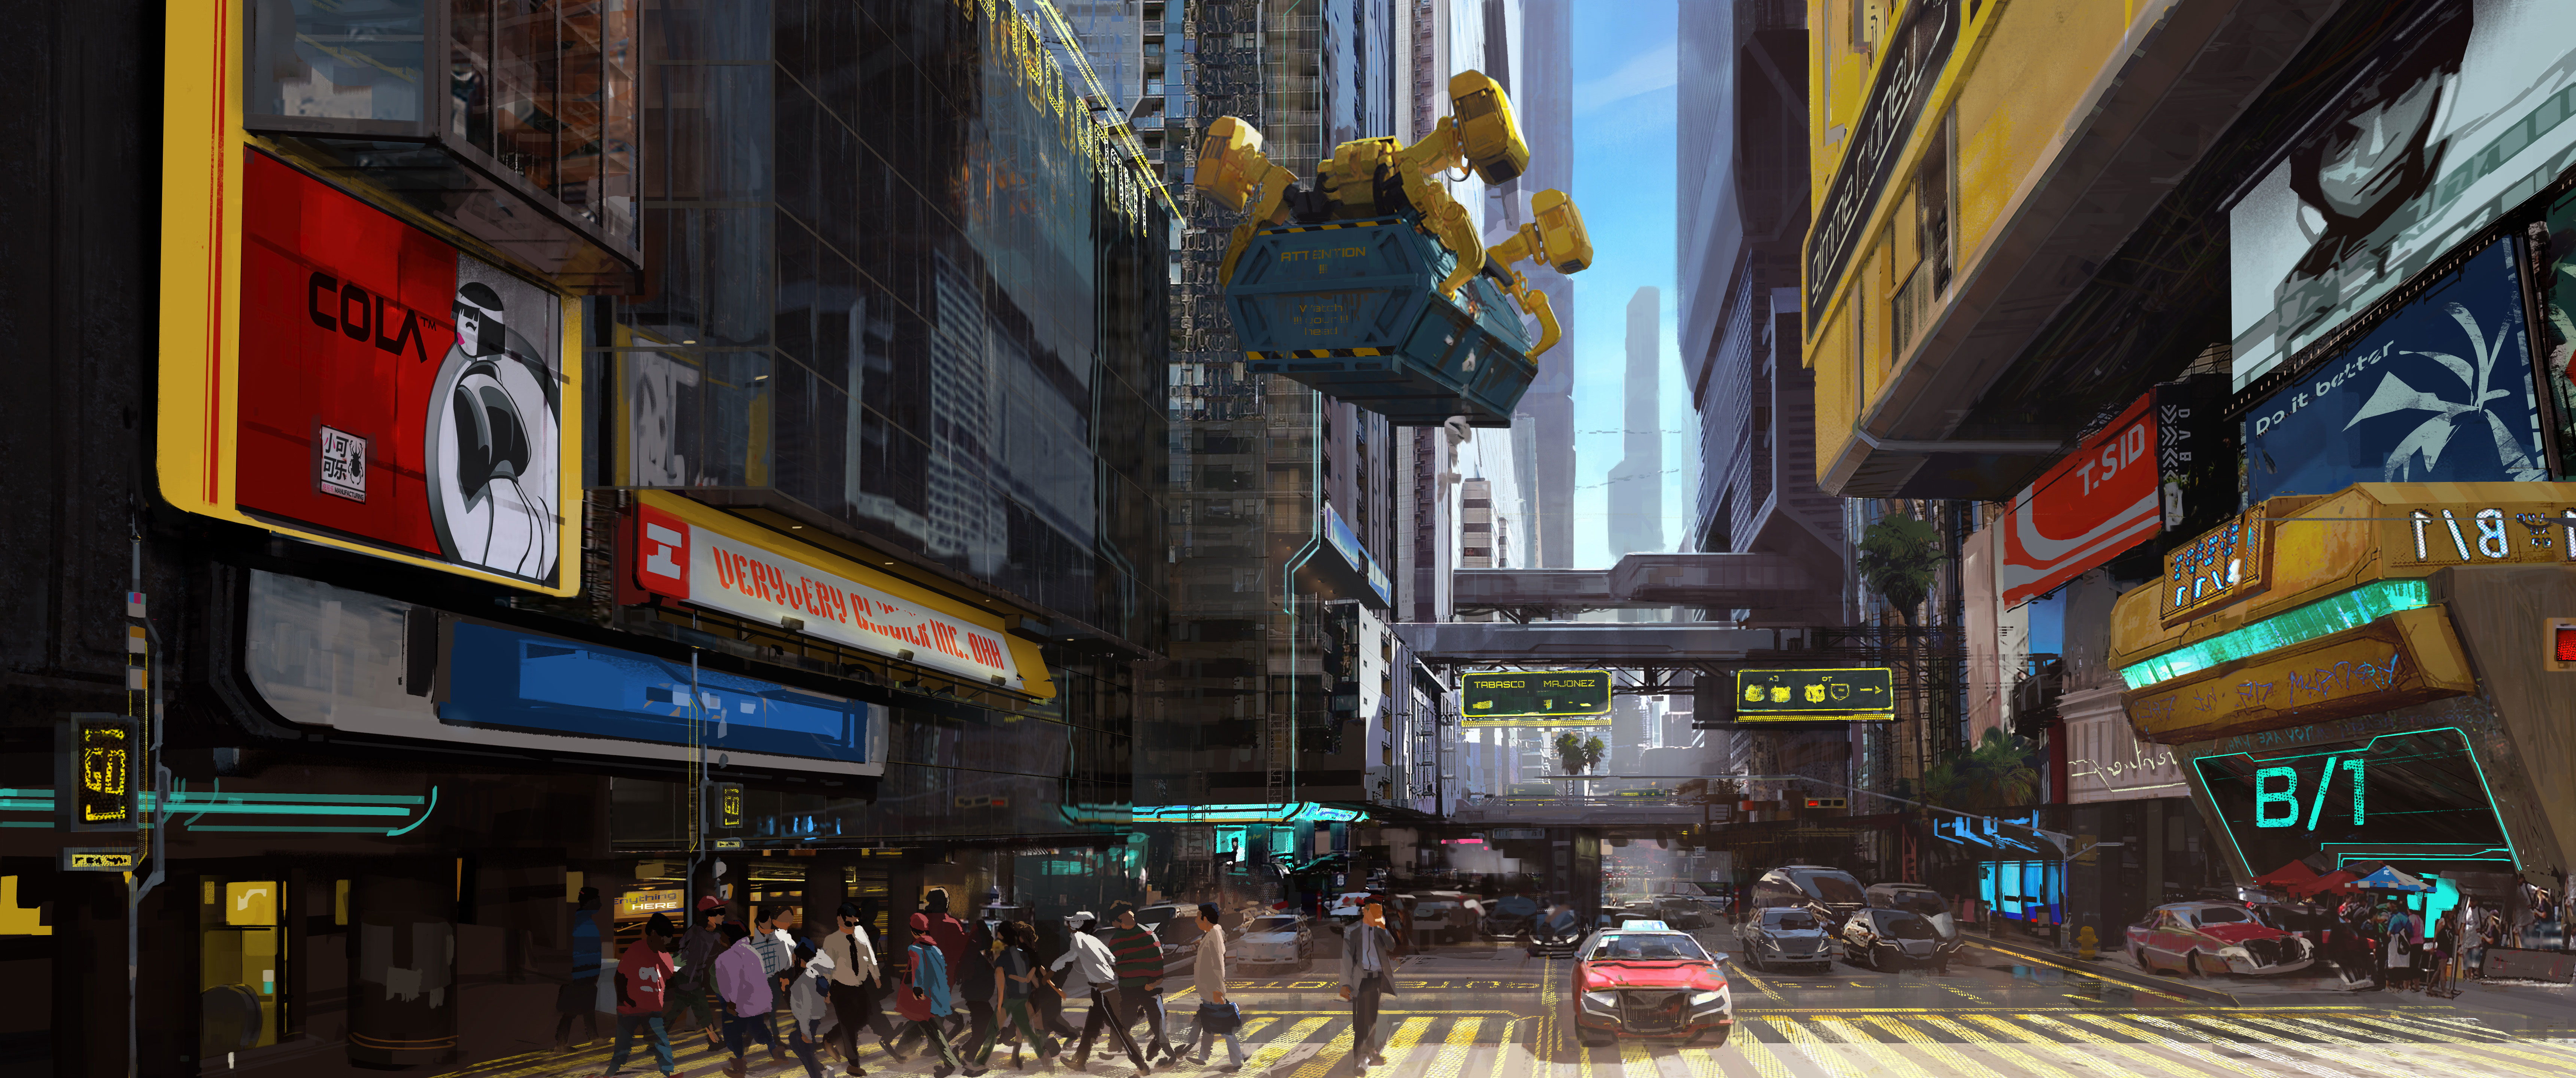 Cyberpunk 2077 City Concept Art Wallpaper, HD Games 4K Wallpapers